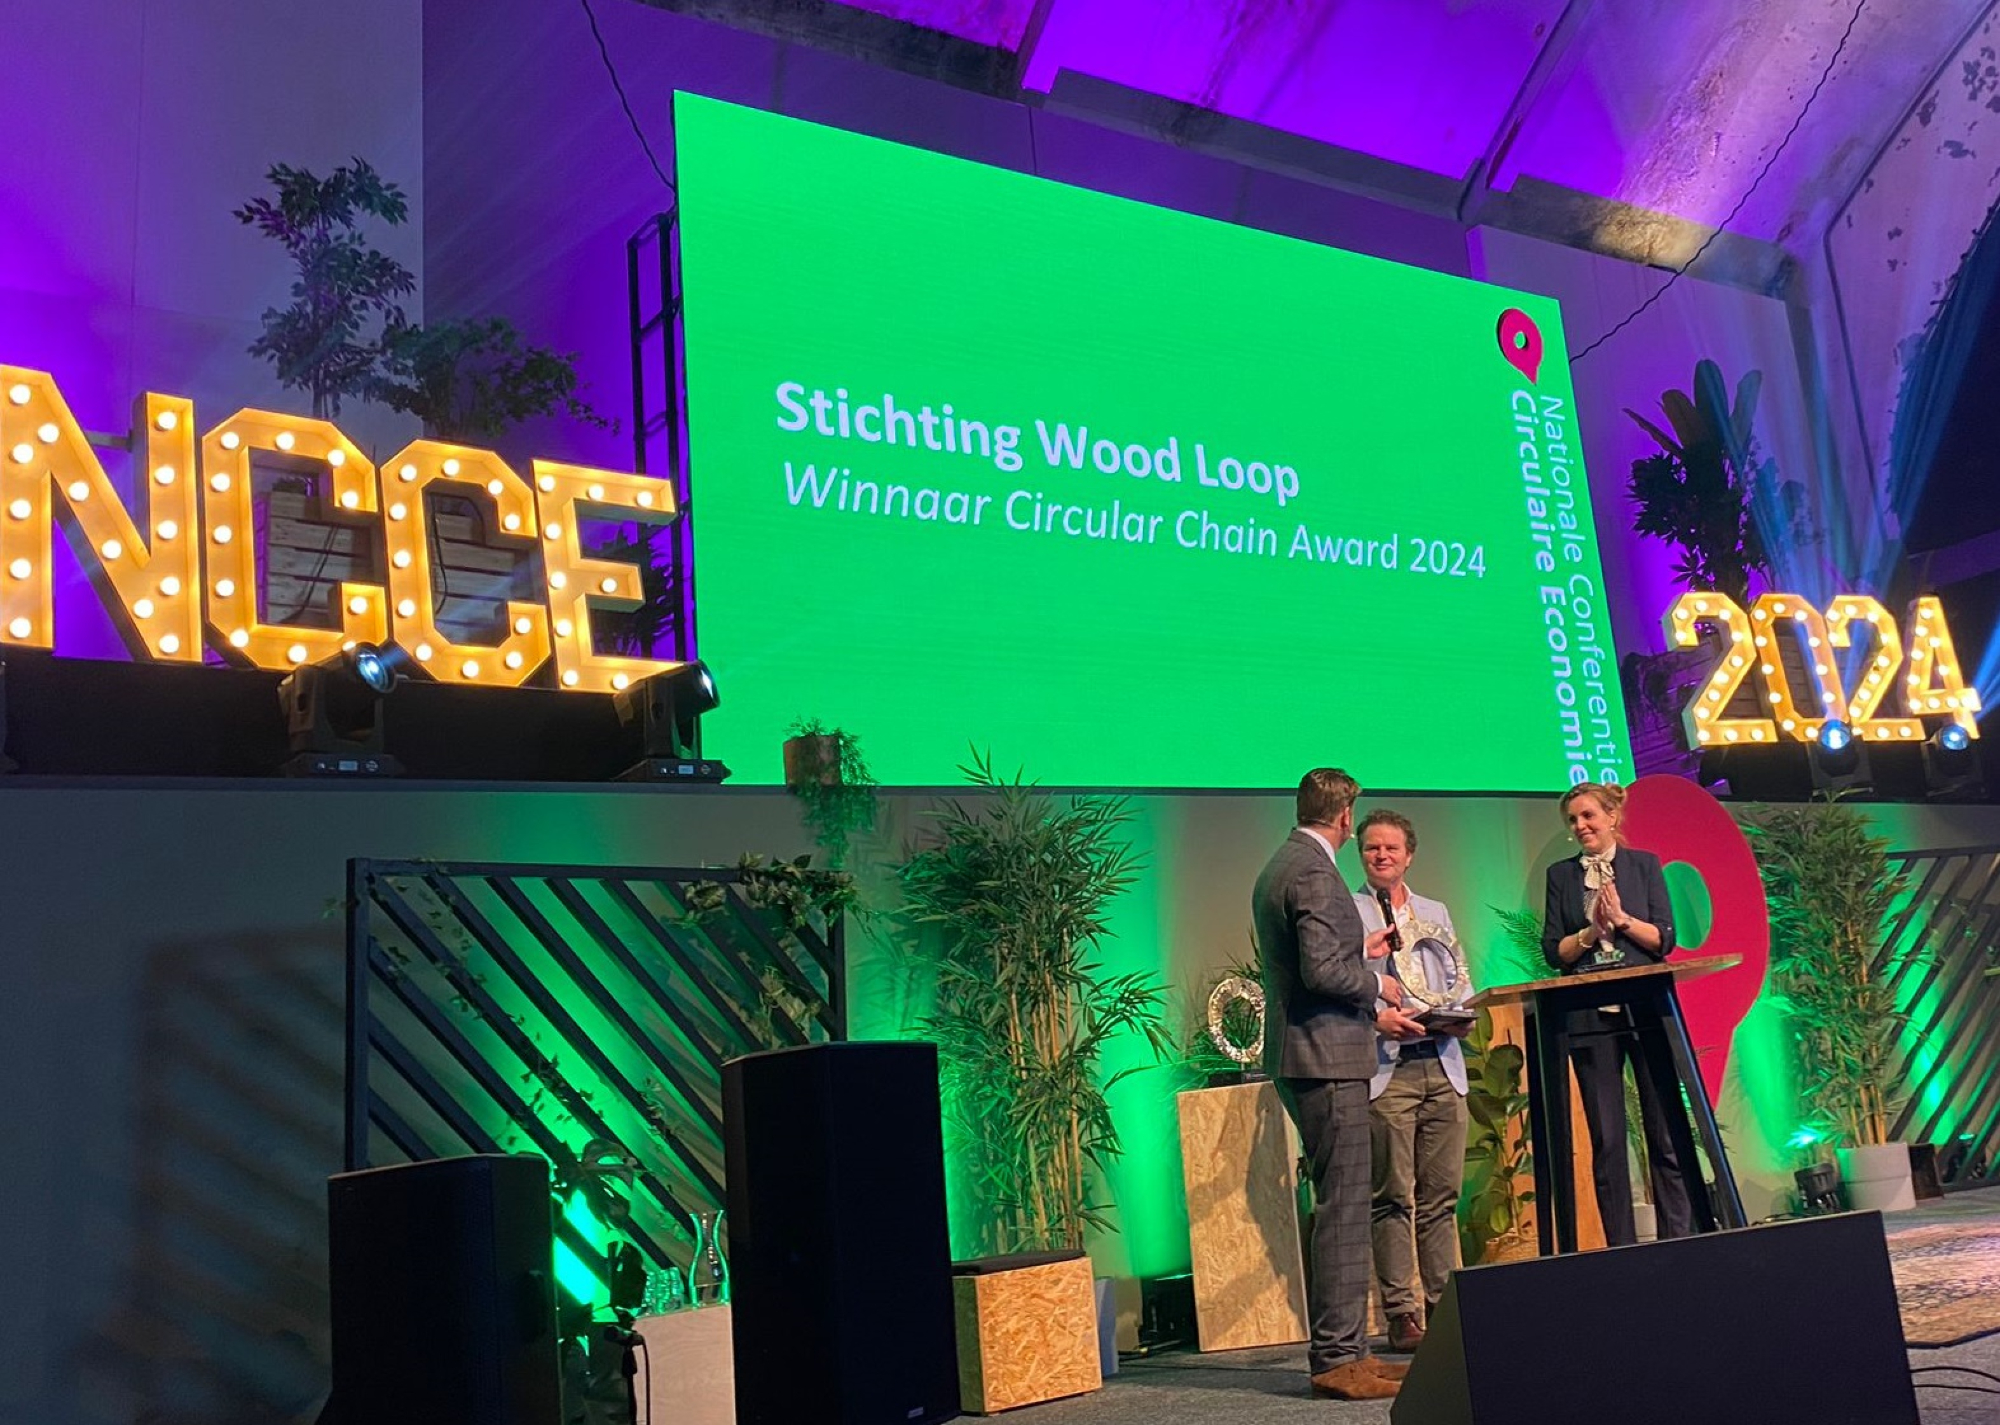 Wood Loop winnaar Circulair Chain Award 2024